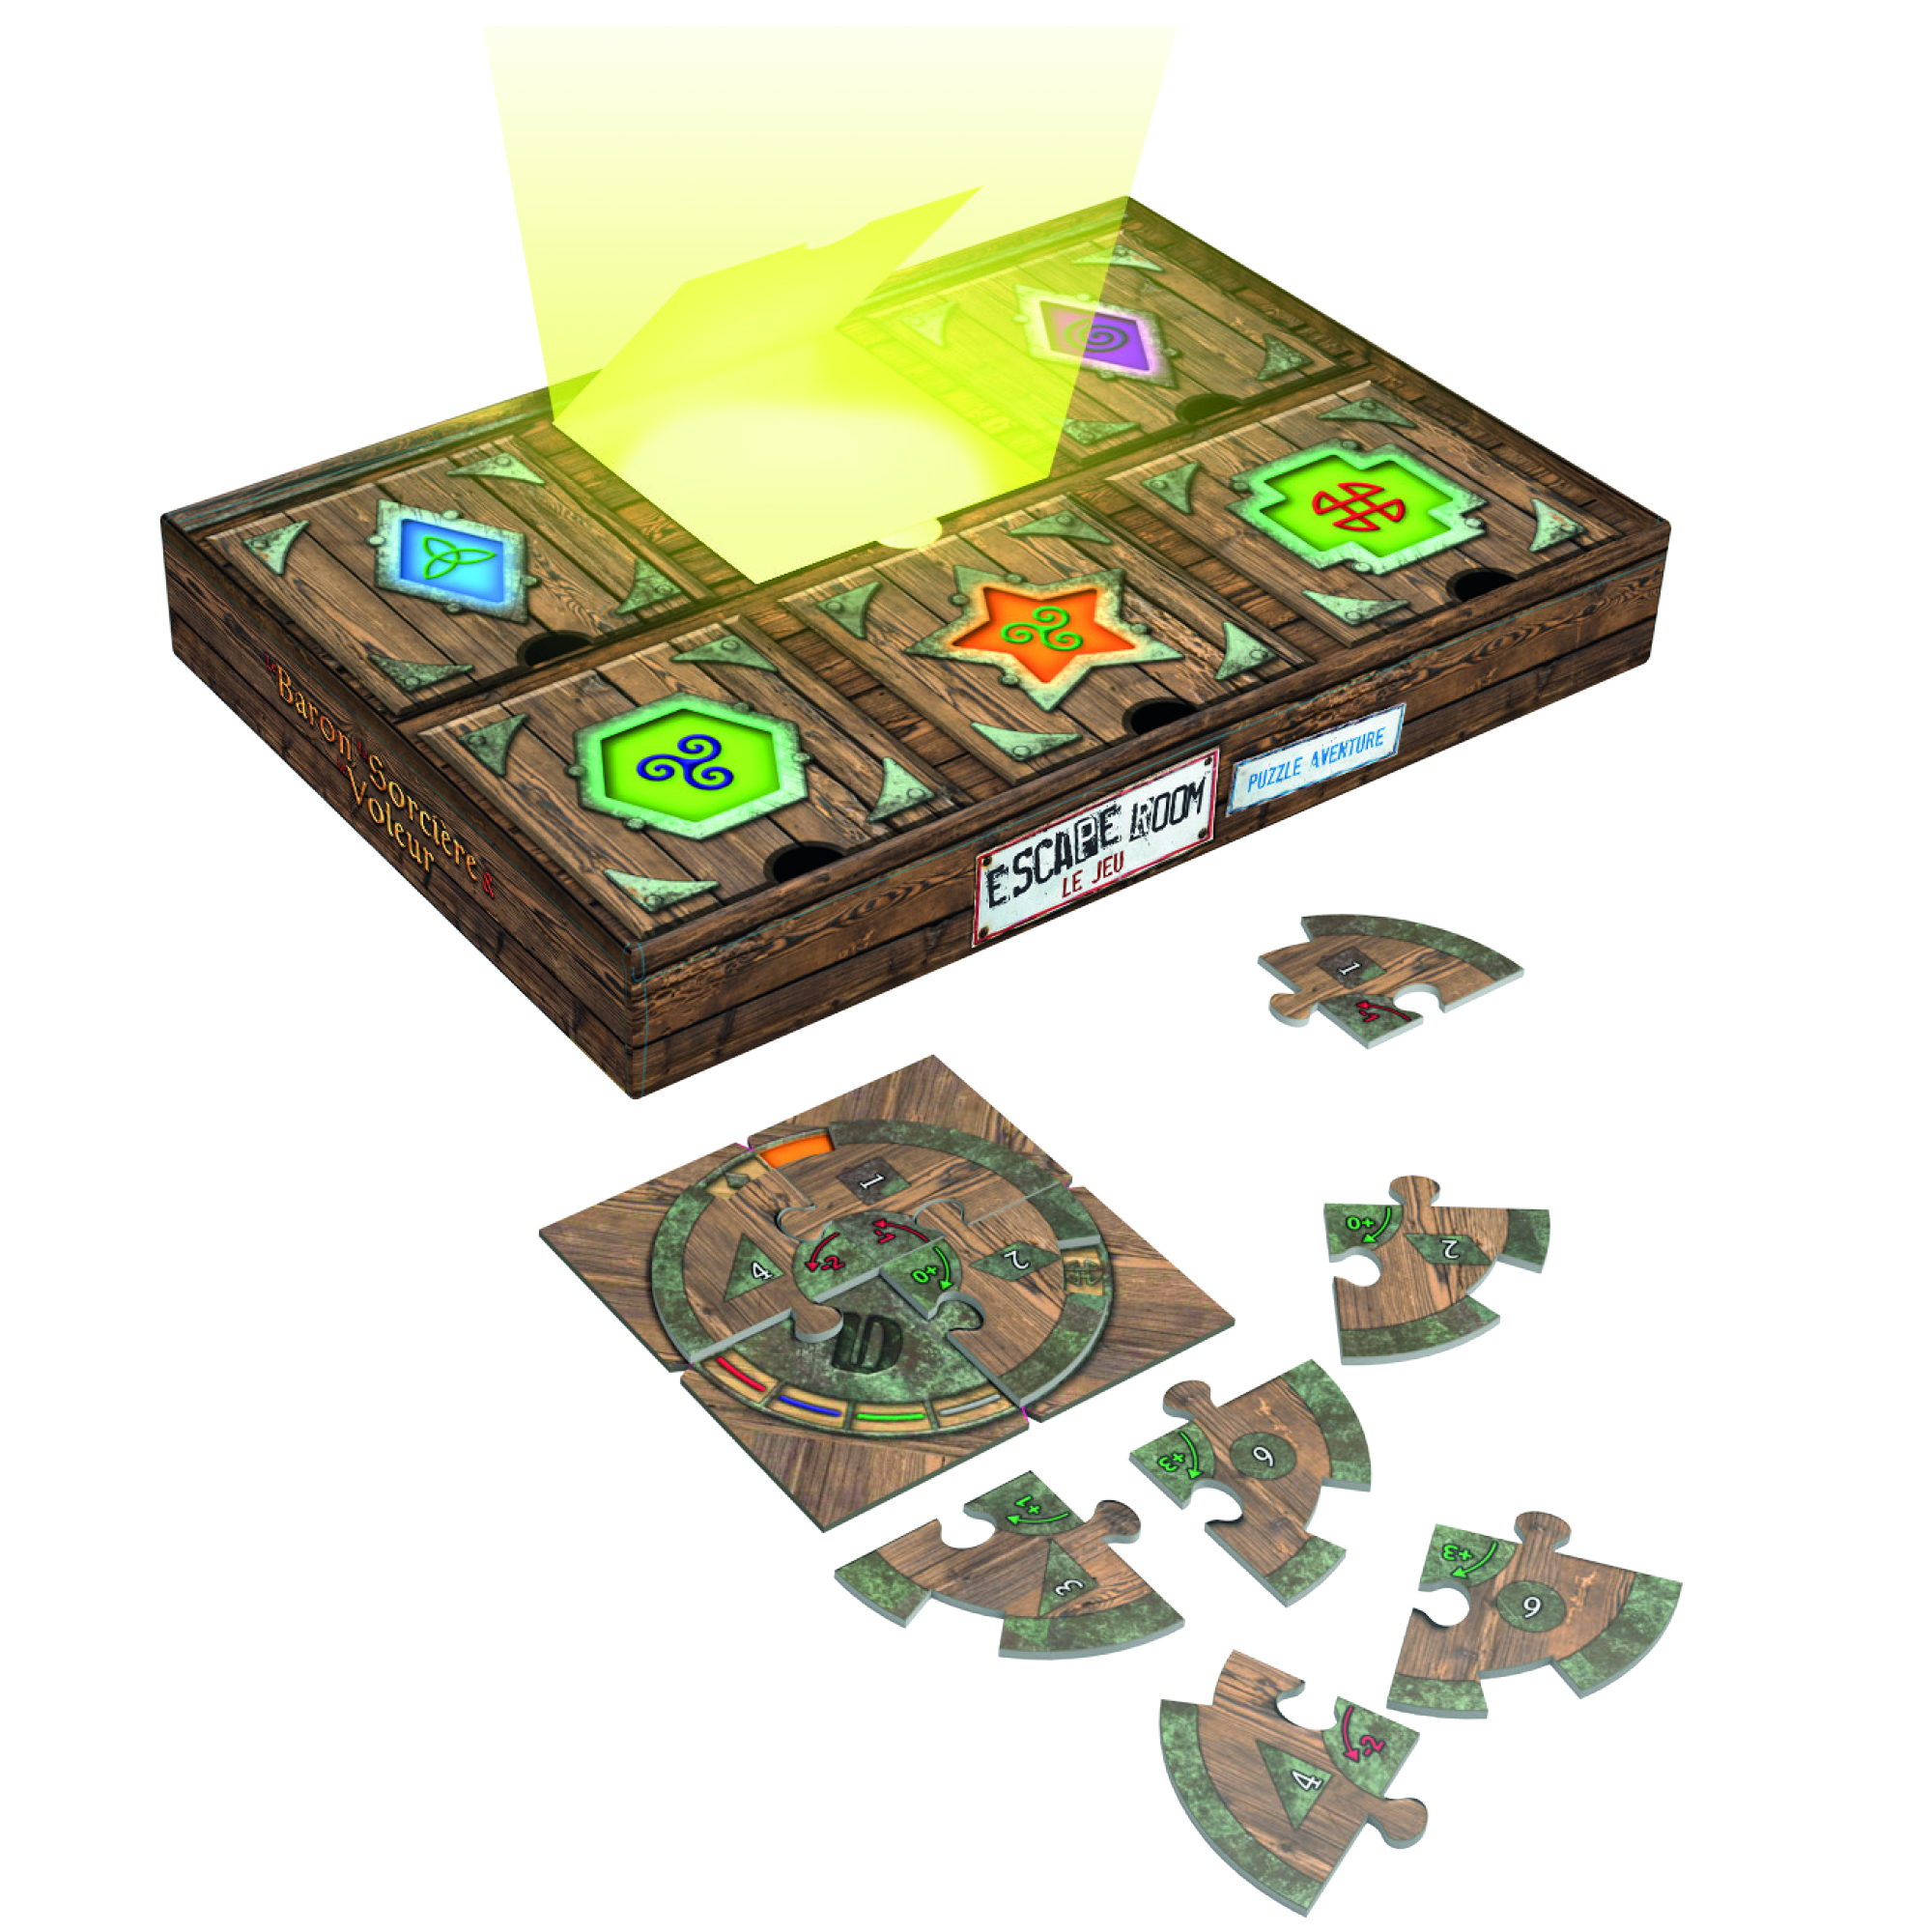 Présentation du jeu Puzzle Aventure - Escape Room: Le Baron, la Sorcière & le Voleur